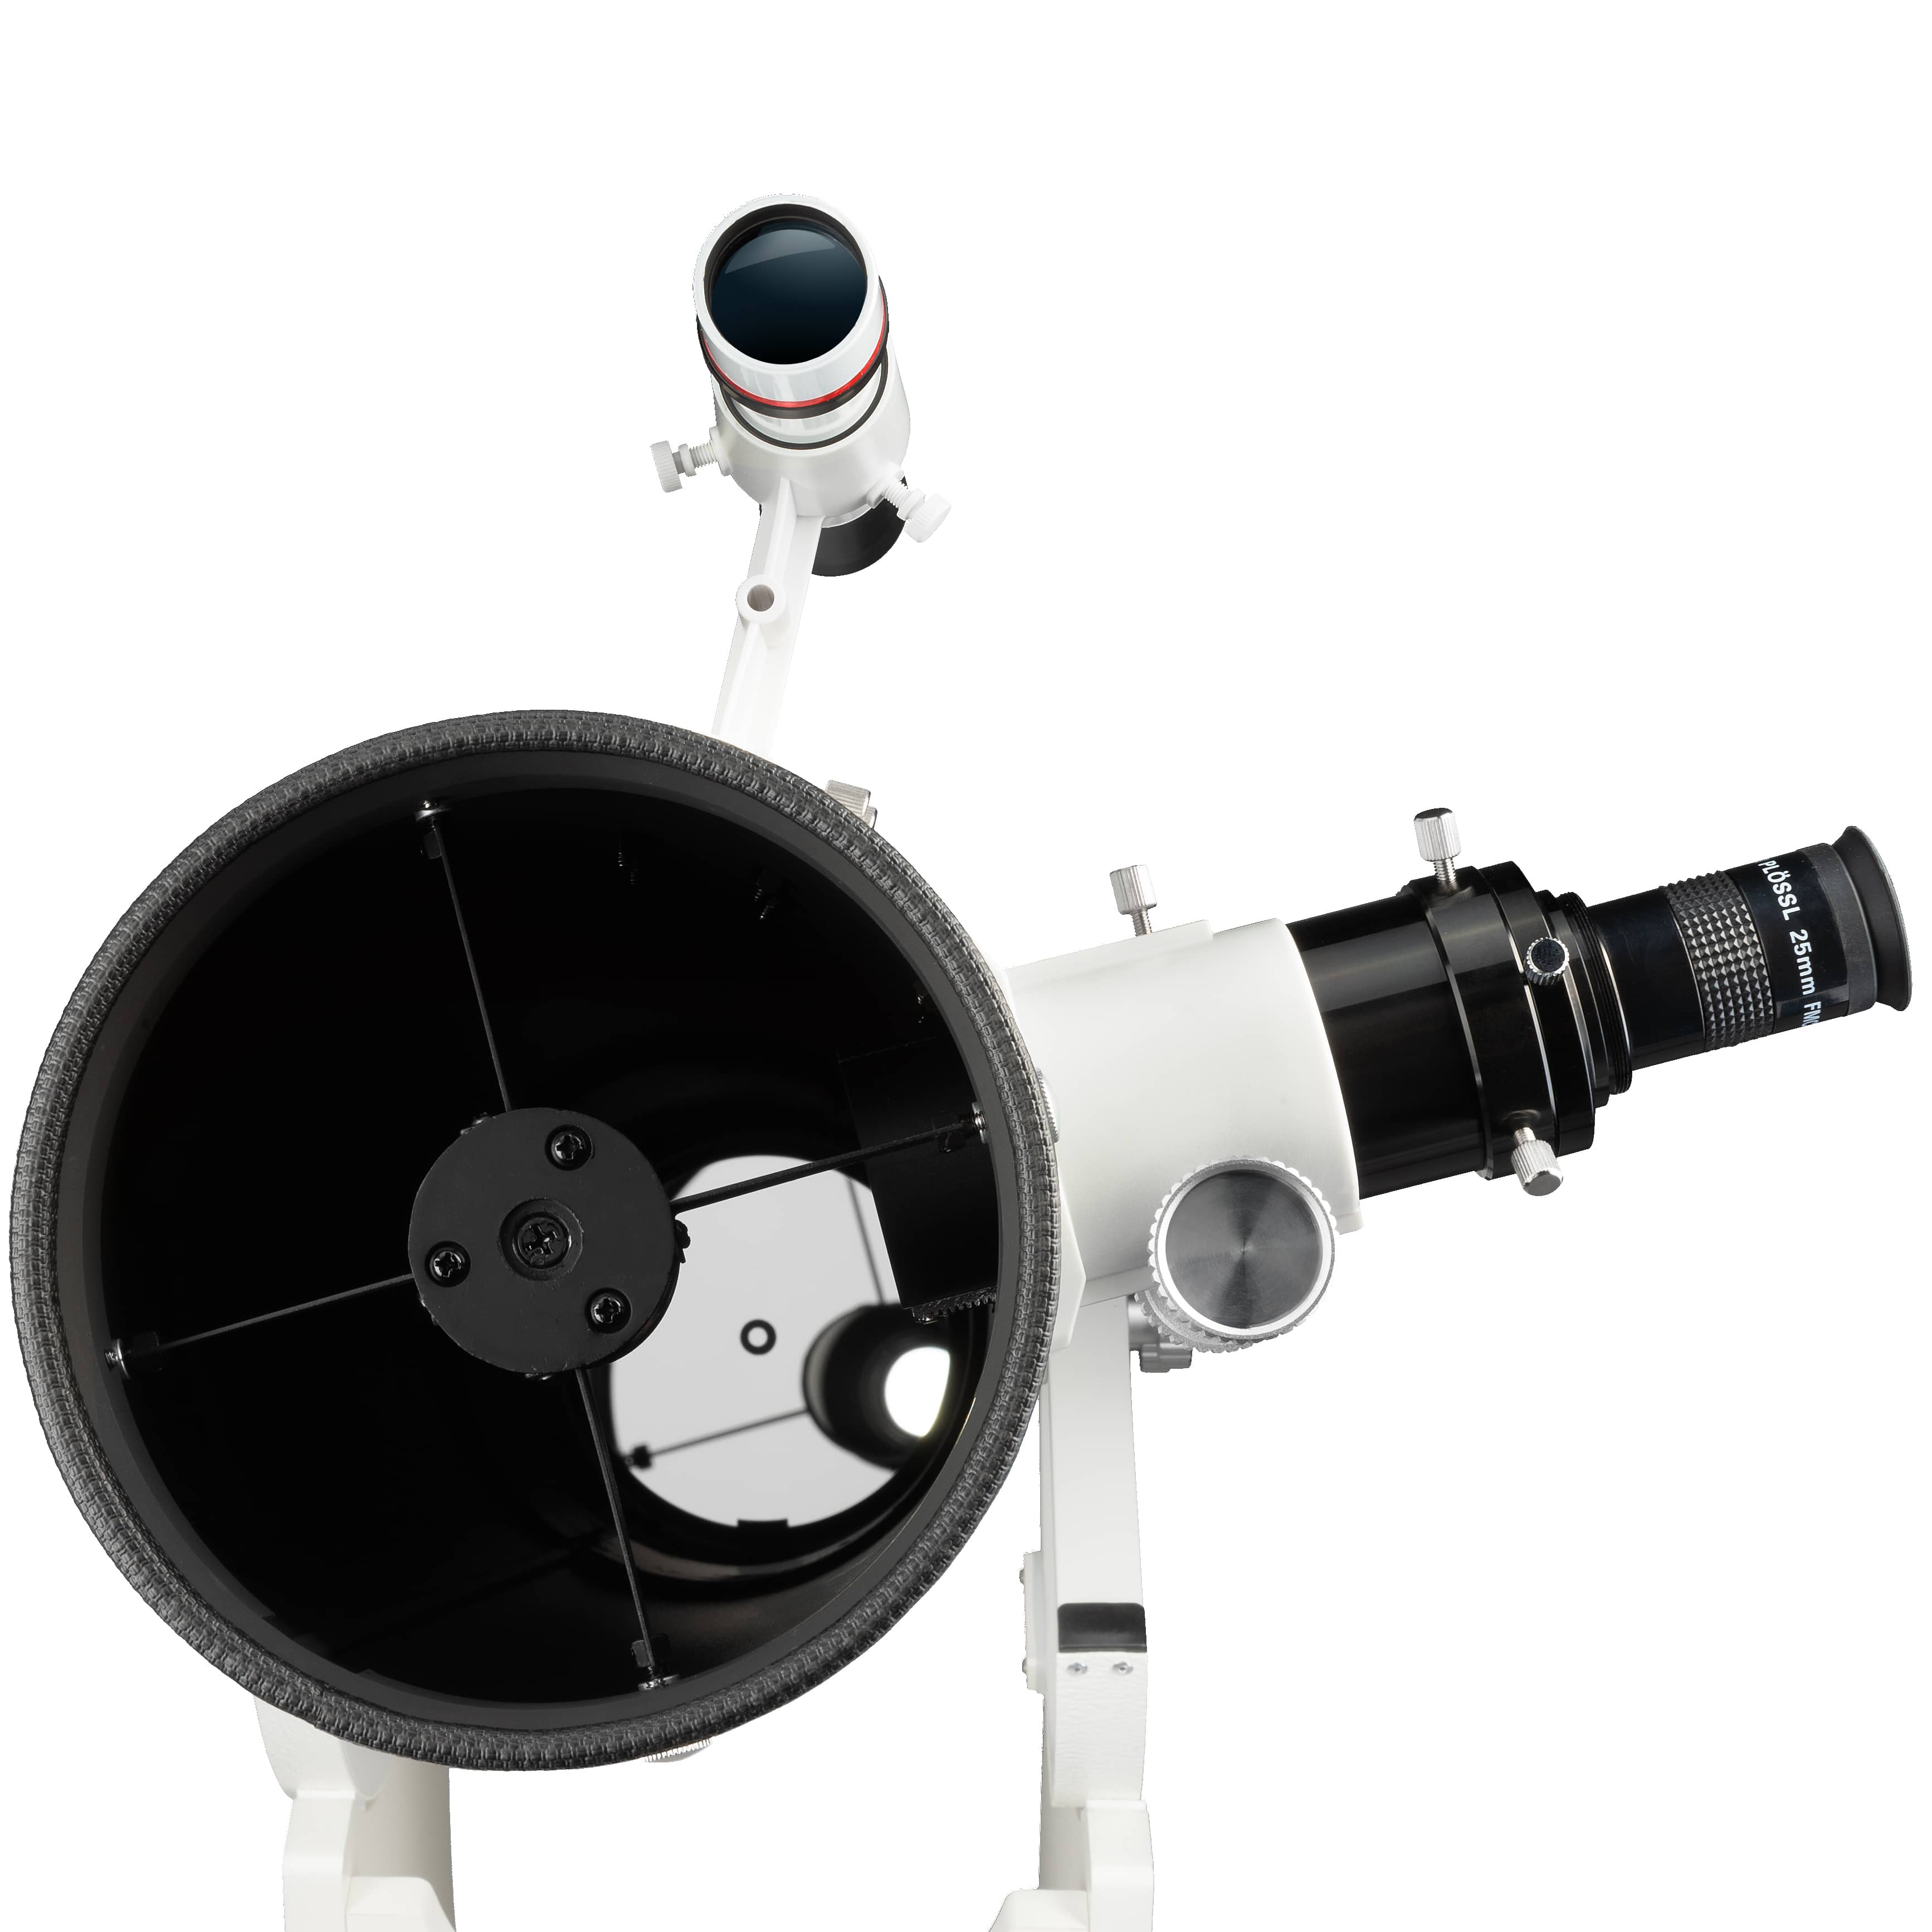  Telescopio planetario Messier 6'' Dobson BRESSER con filtro solare 